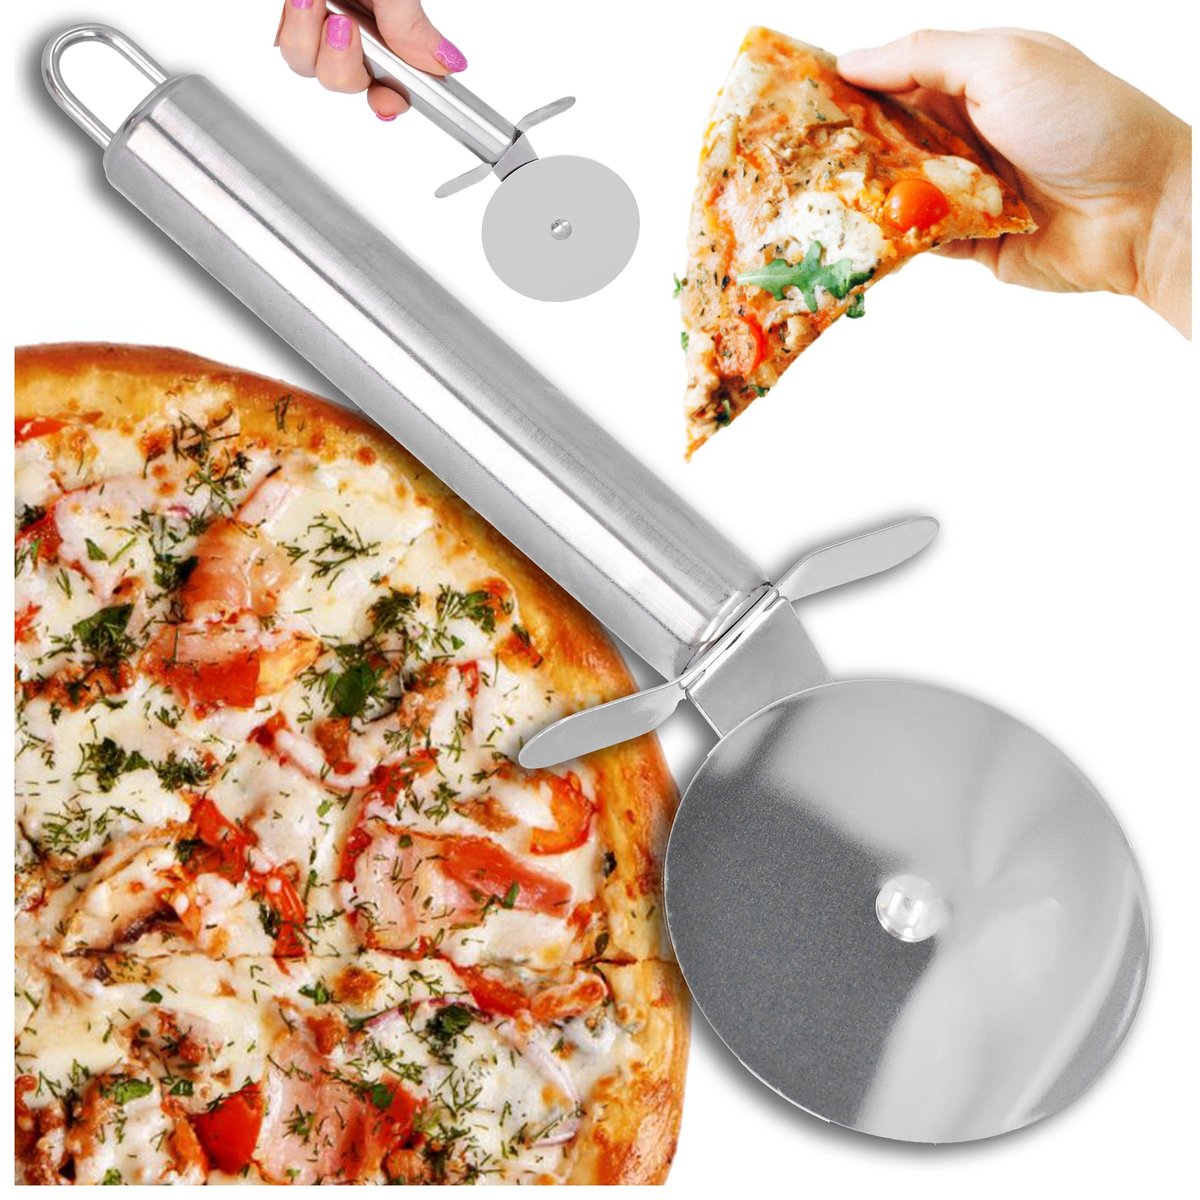 Zdjęcia - Nóż stołowy Ostry Nóż do krojenia pizzy stal nierdzewna  okrągły radełko krajalnica 